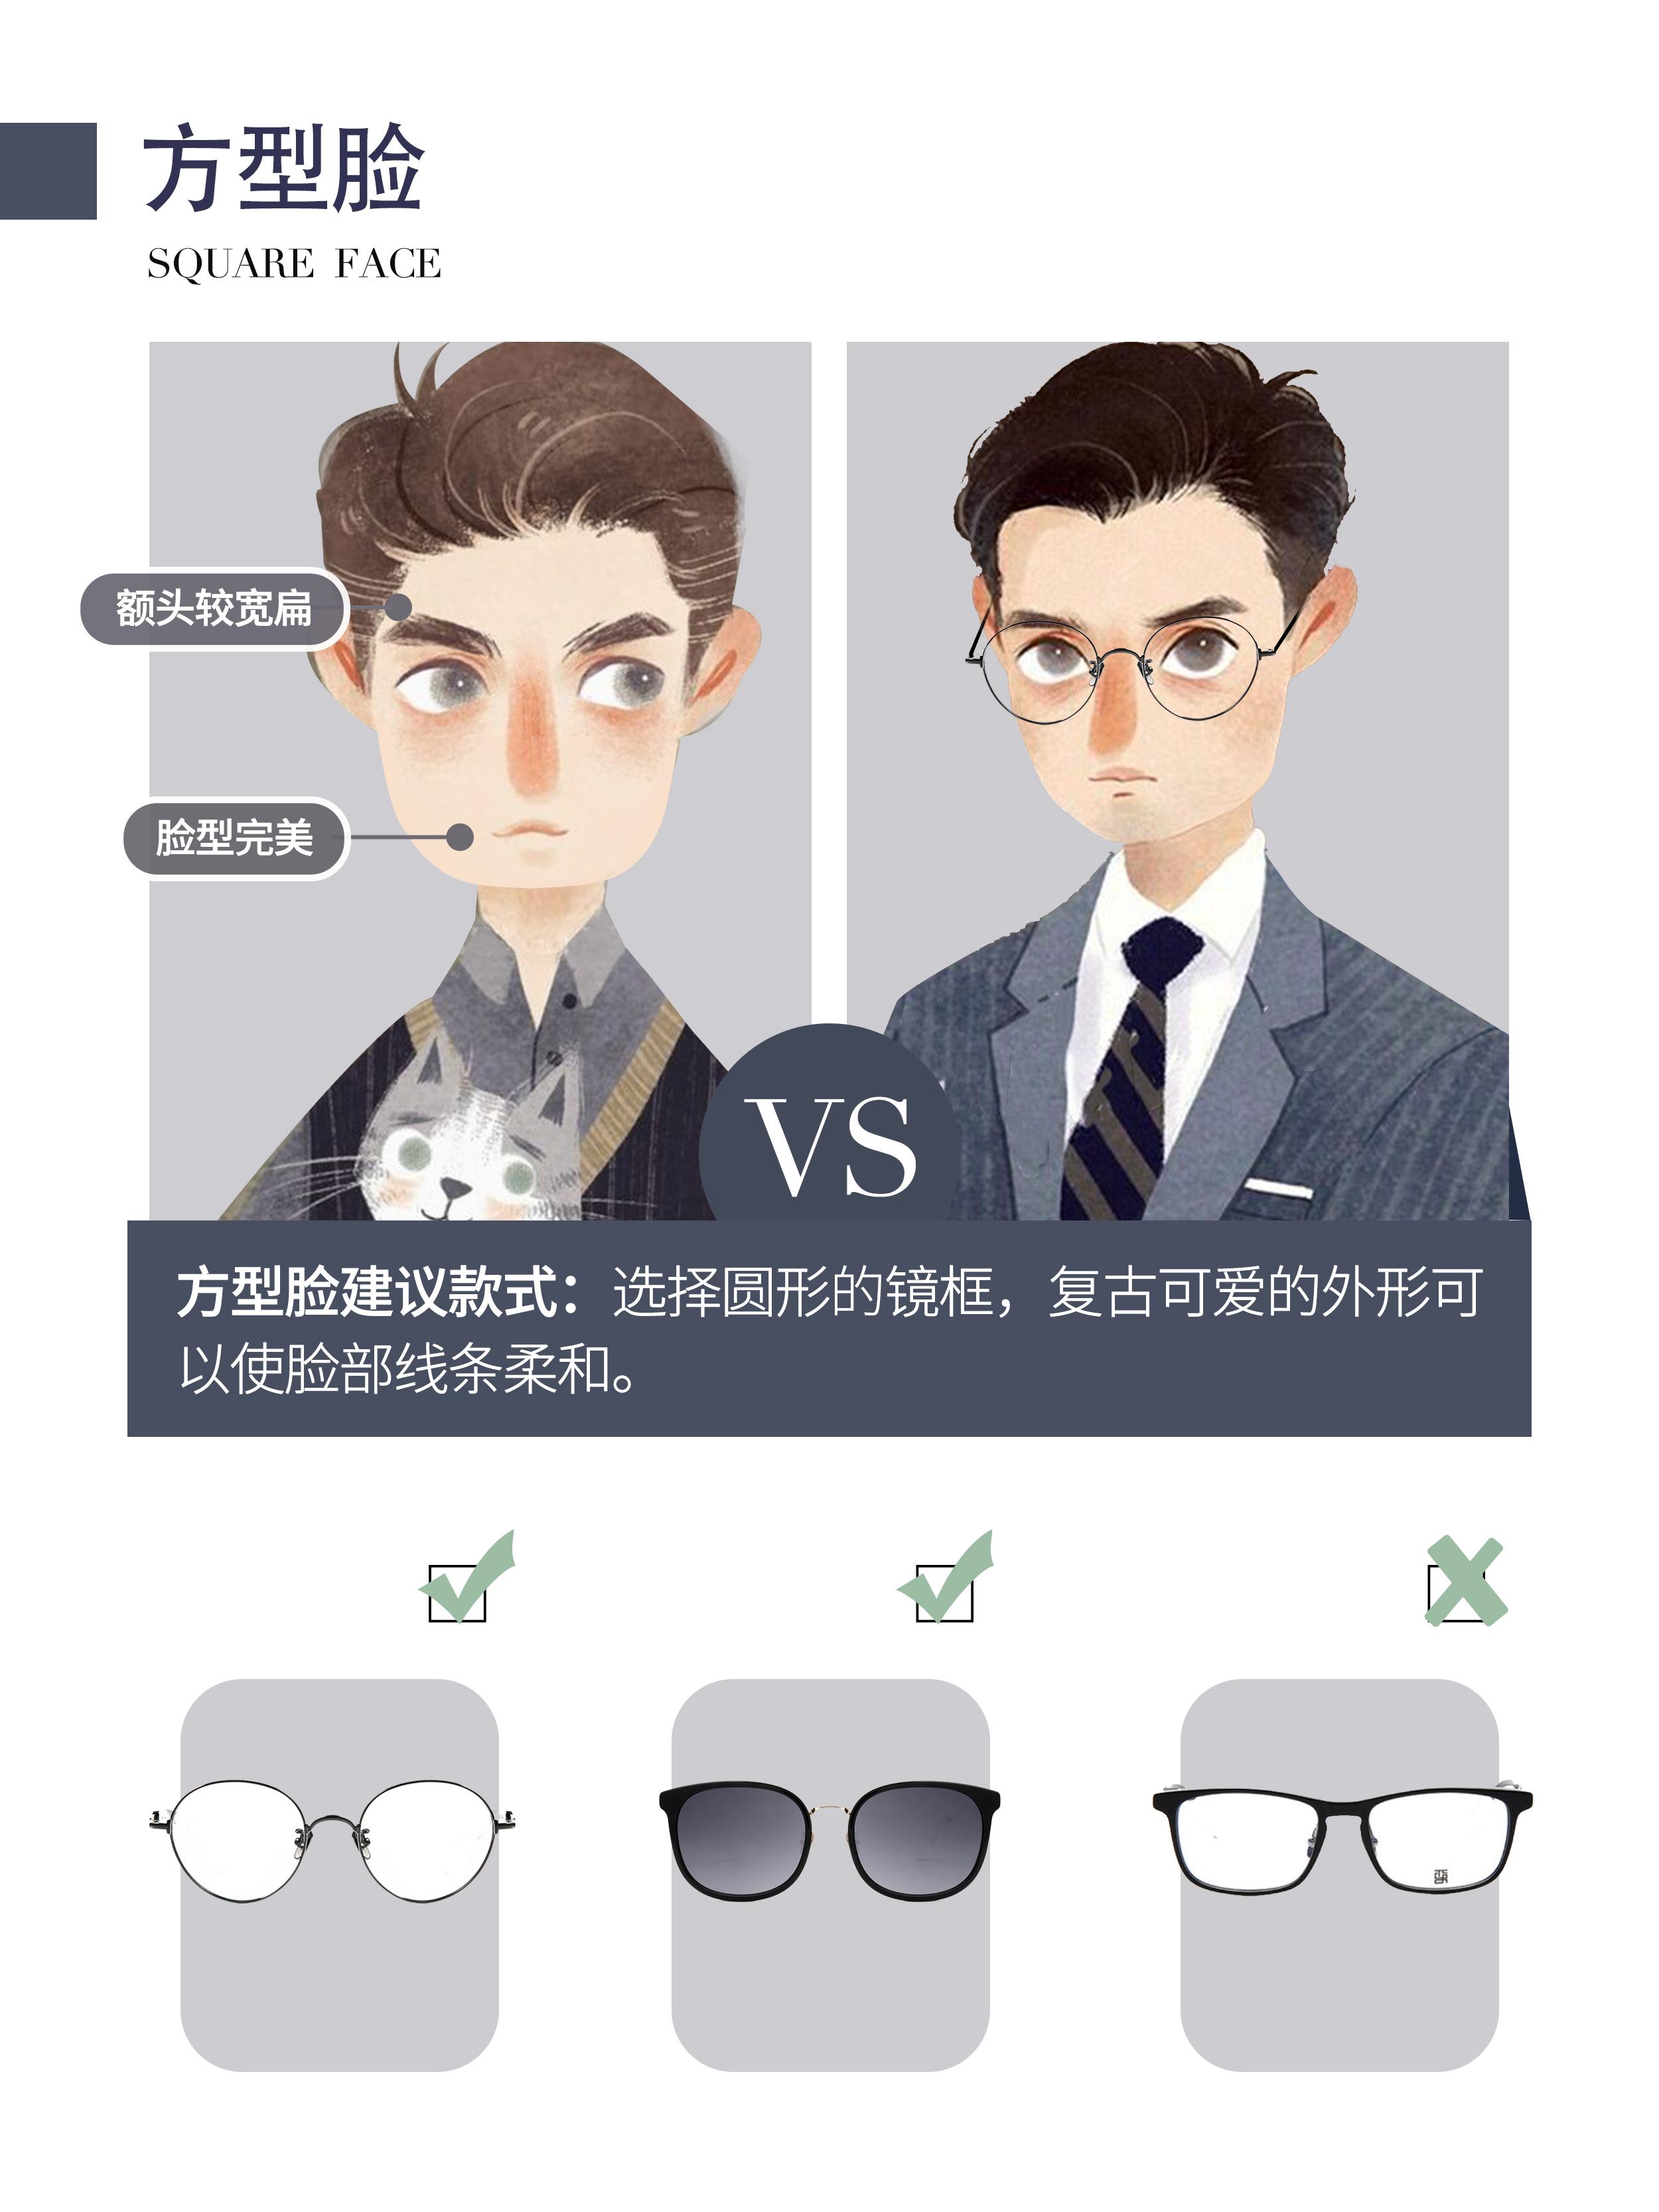 眼镜拍摄 眼镜模特拍摄 - 广州北斗摄影公司